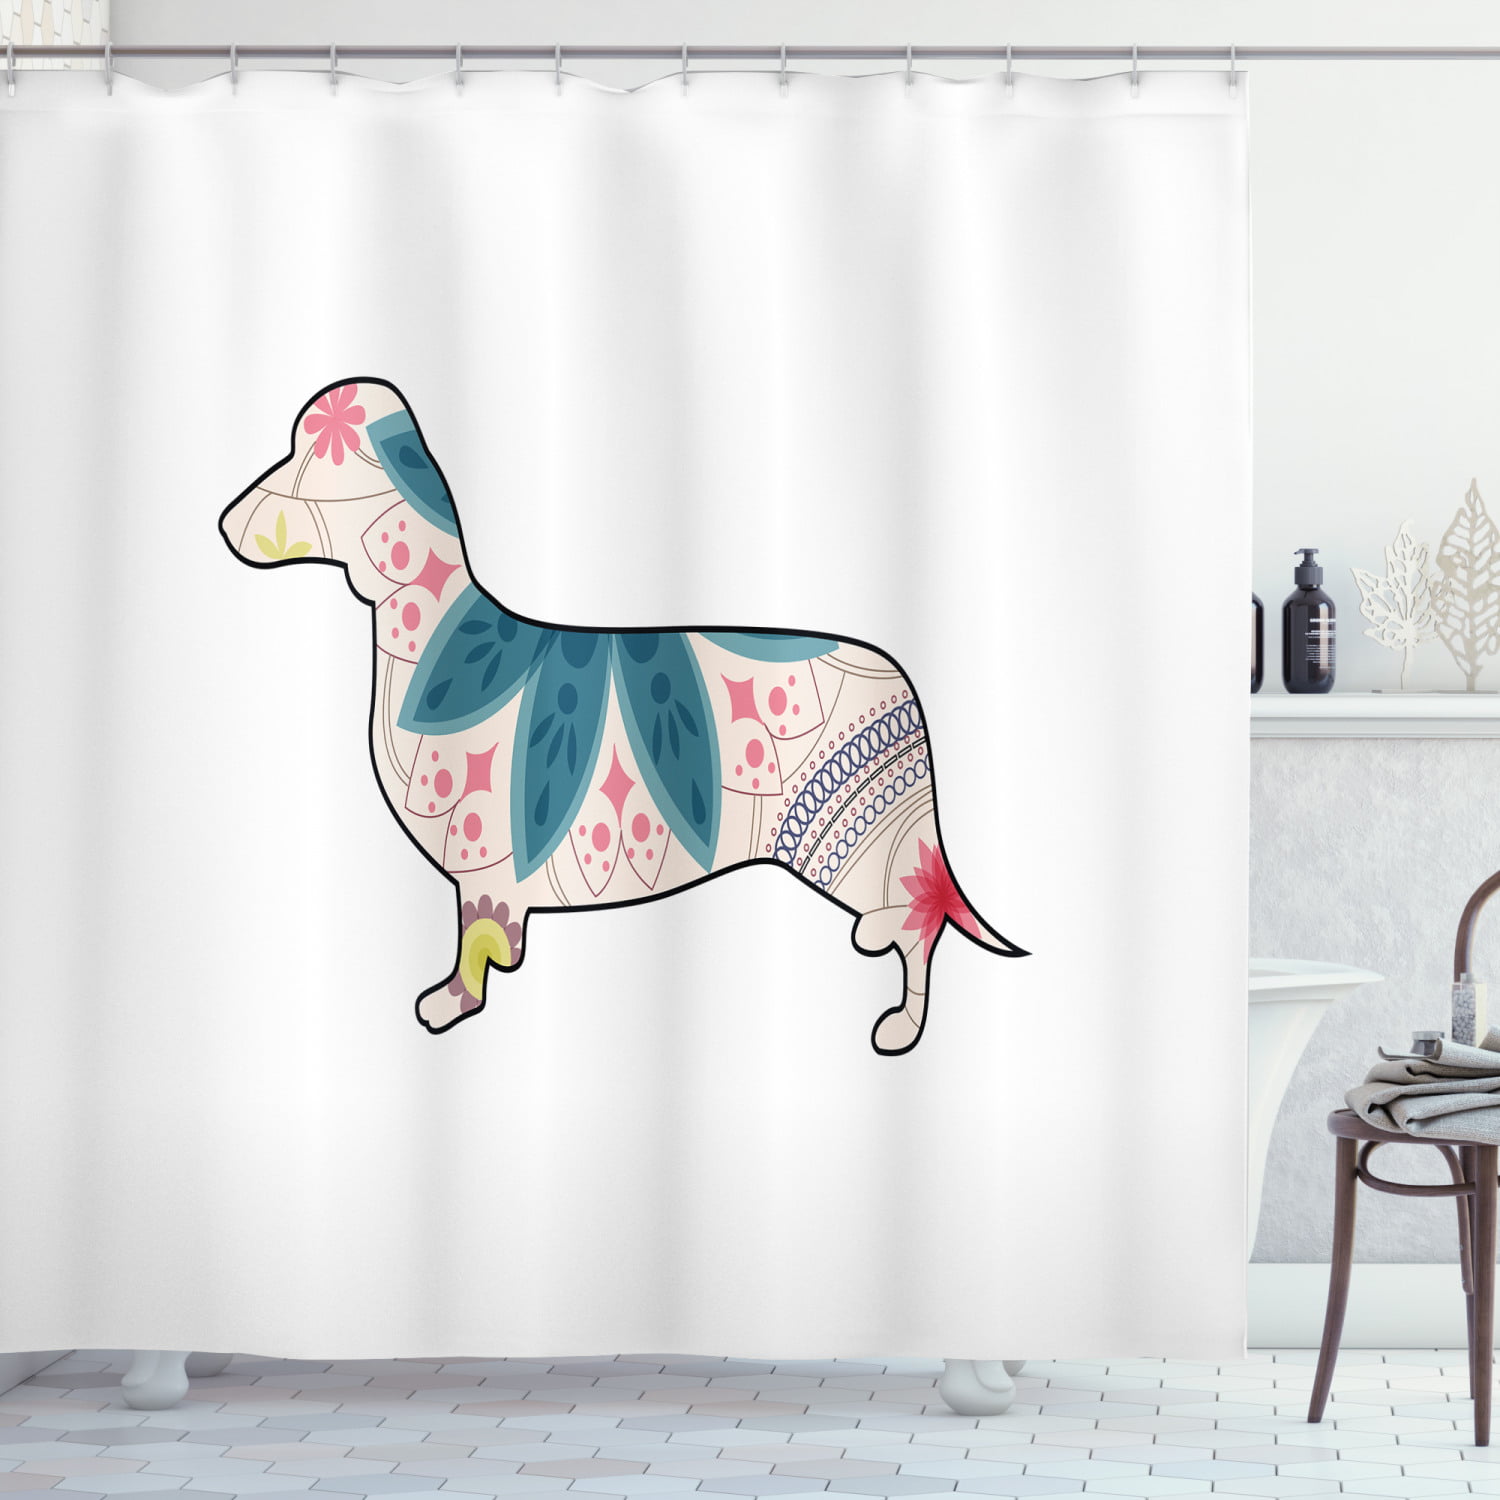 Dog Shower Curtain Animal Shower Curtain Dachshund Dog Waterproof Shower Curtain Bathroom Decor Fabric Dog Polyester